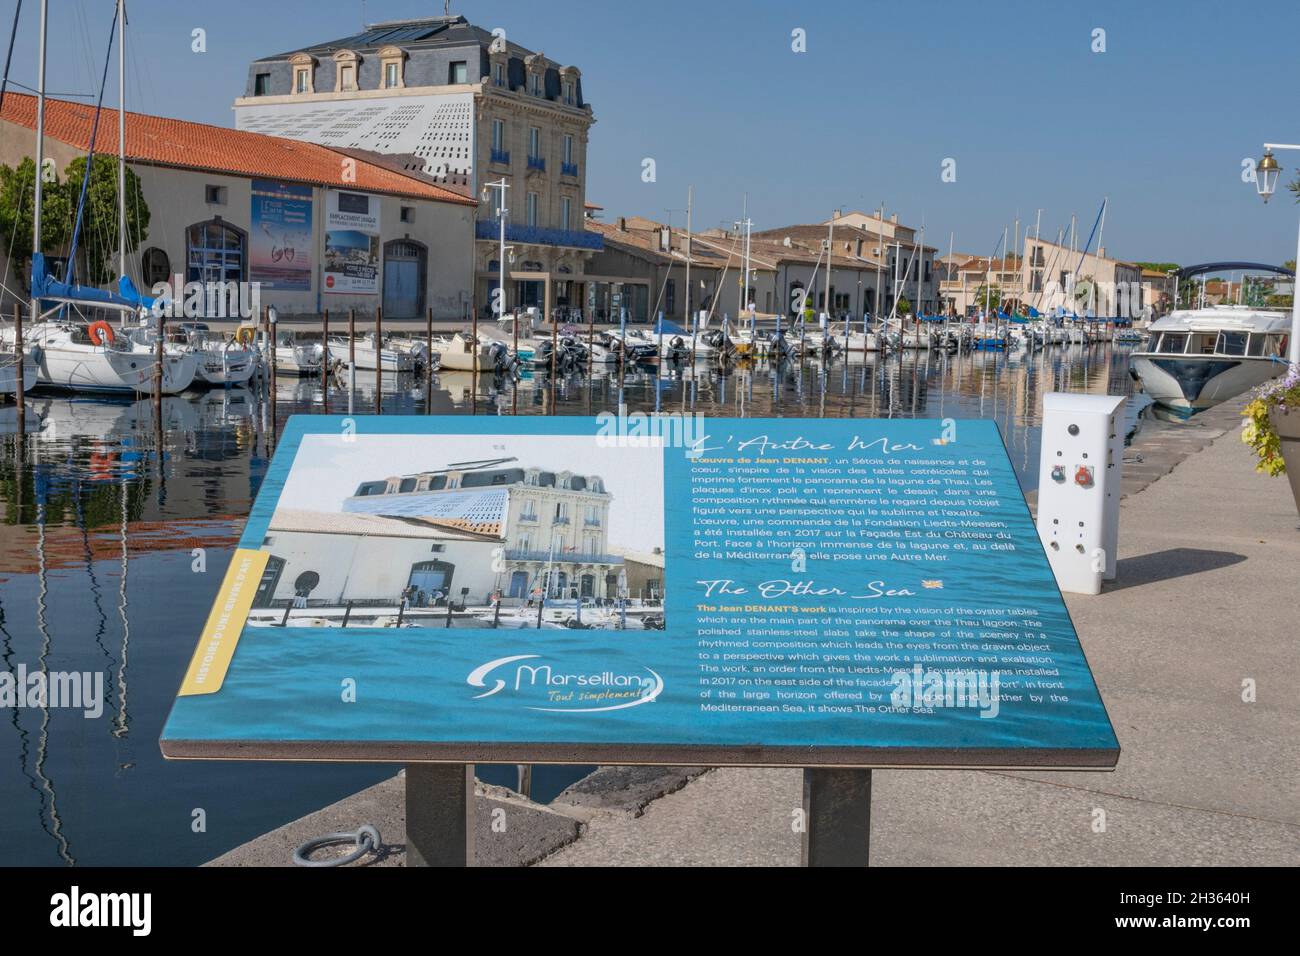 El puerto de Marseillan en el Étang de Thau, Francia Foto de stock